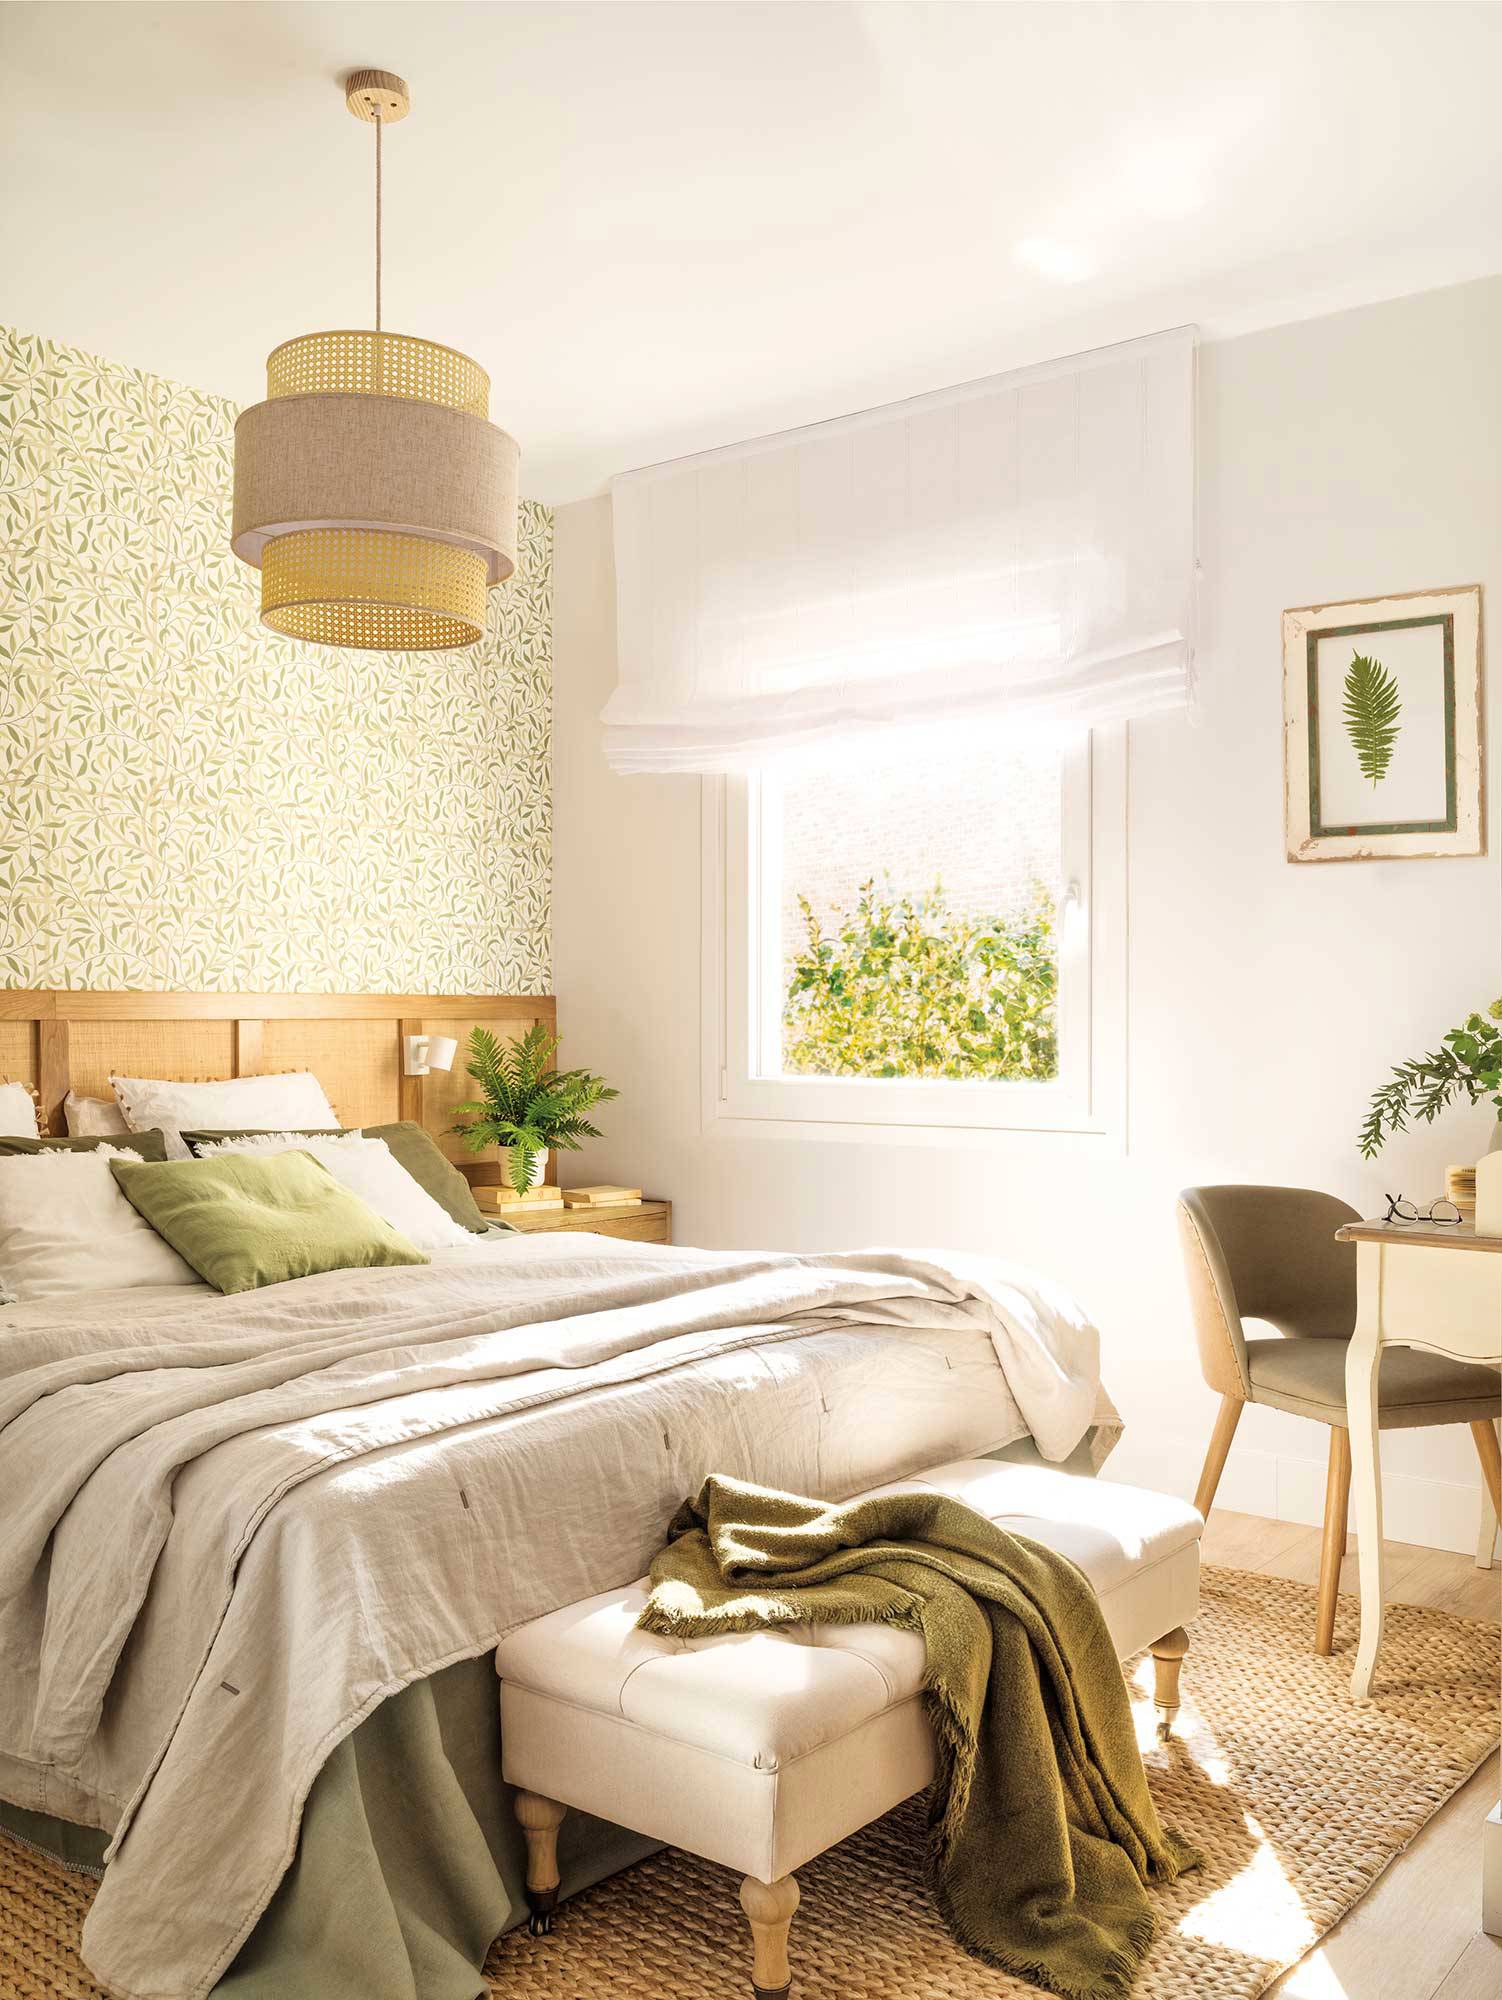 Dormitorio clásico con papel pintado en el cabecero. 